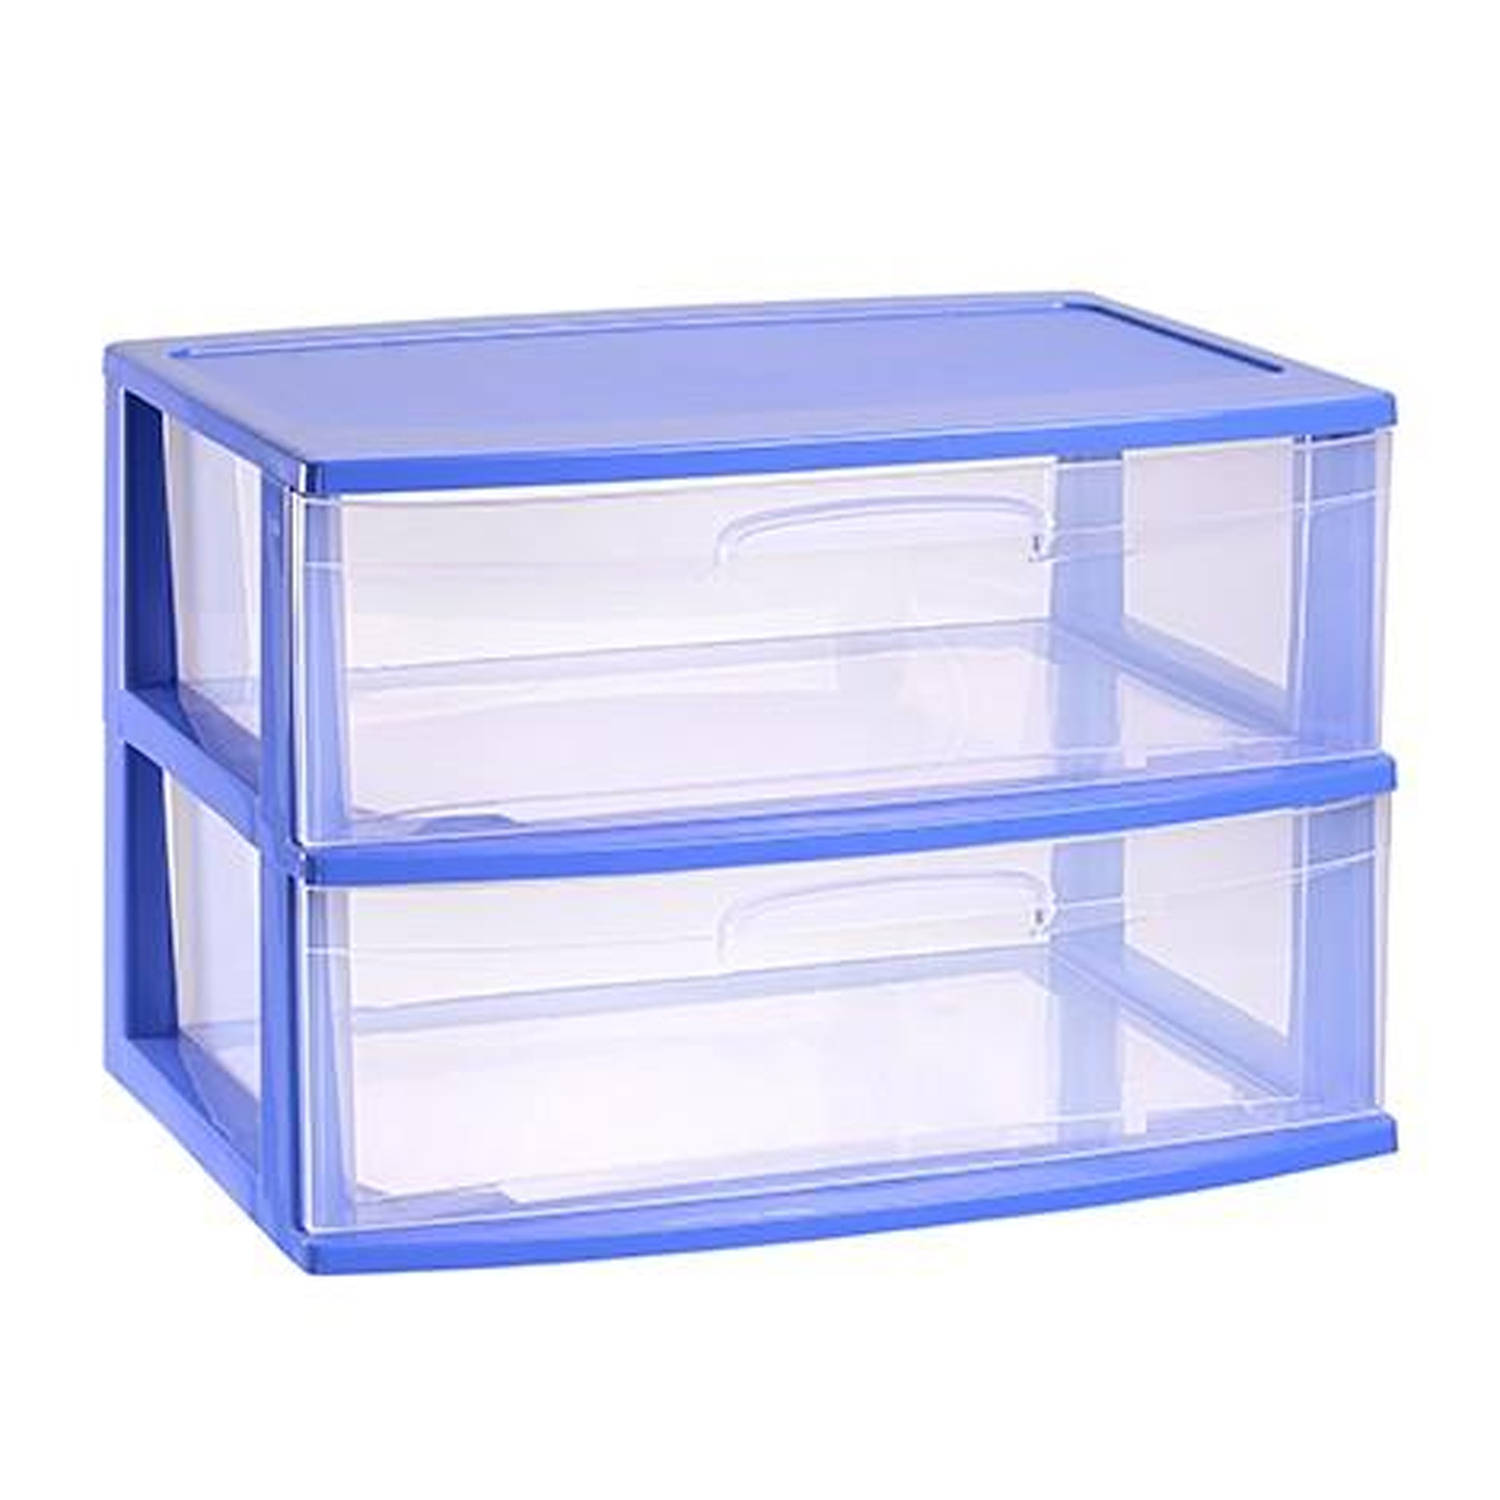 Plasticforte Ladeblokje organizer 2x lades - blauw/transparant - L56 x B40 x H41 cm - plastic